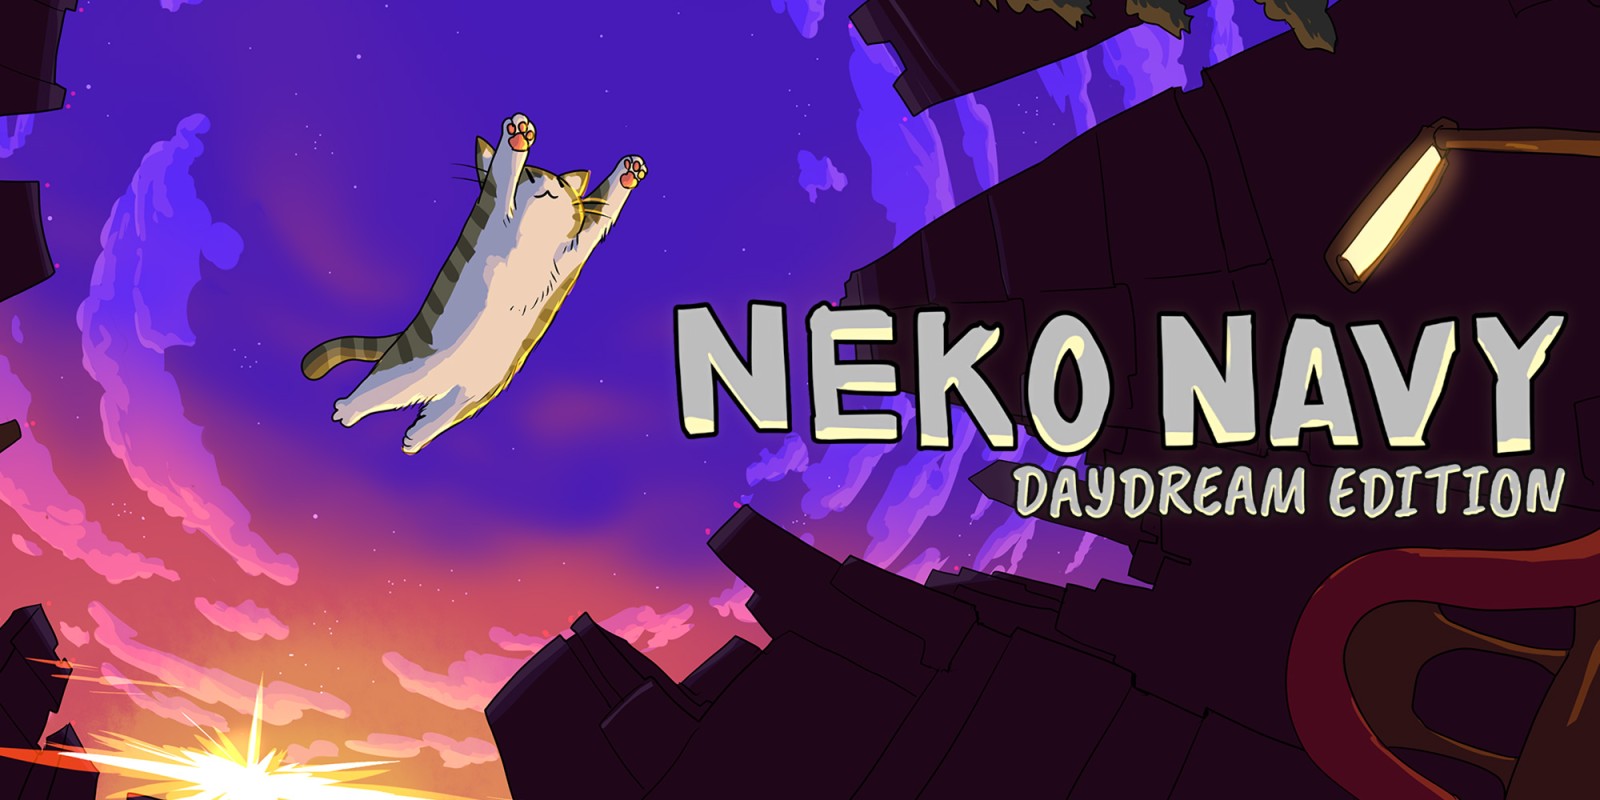 Neko Navy - Daydream Edition